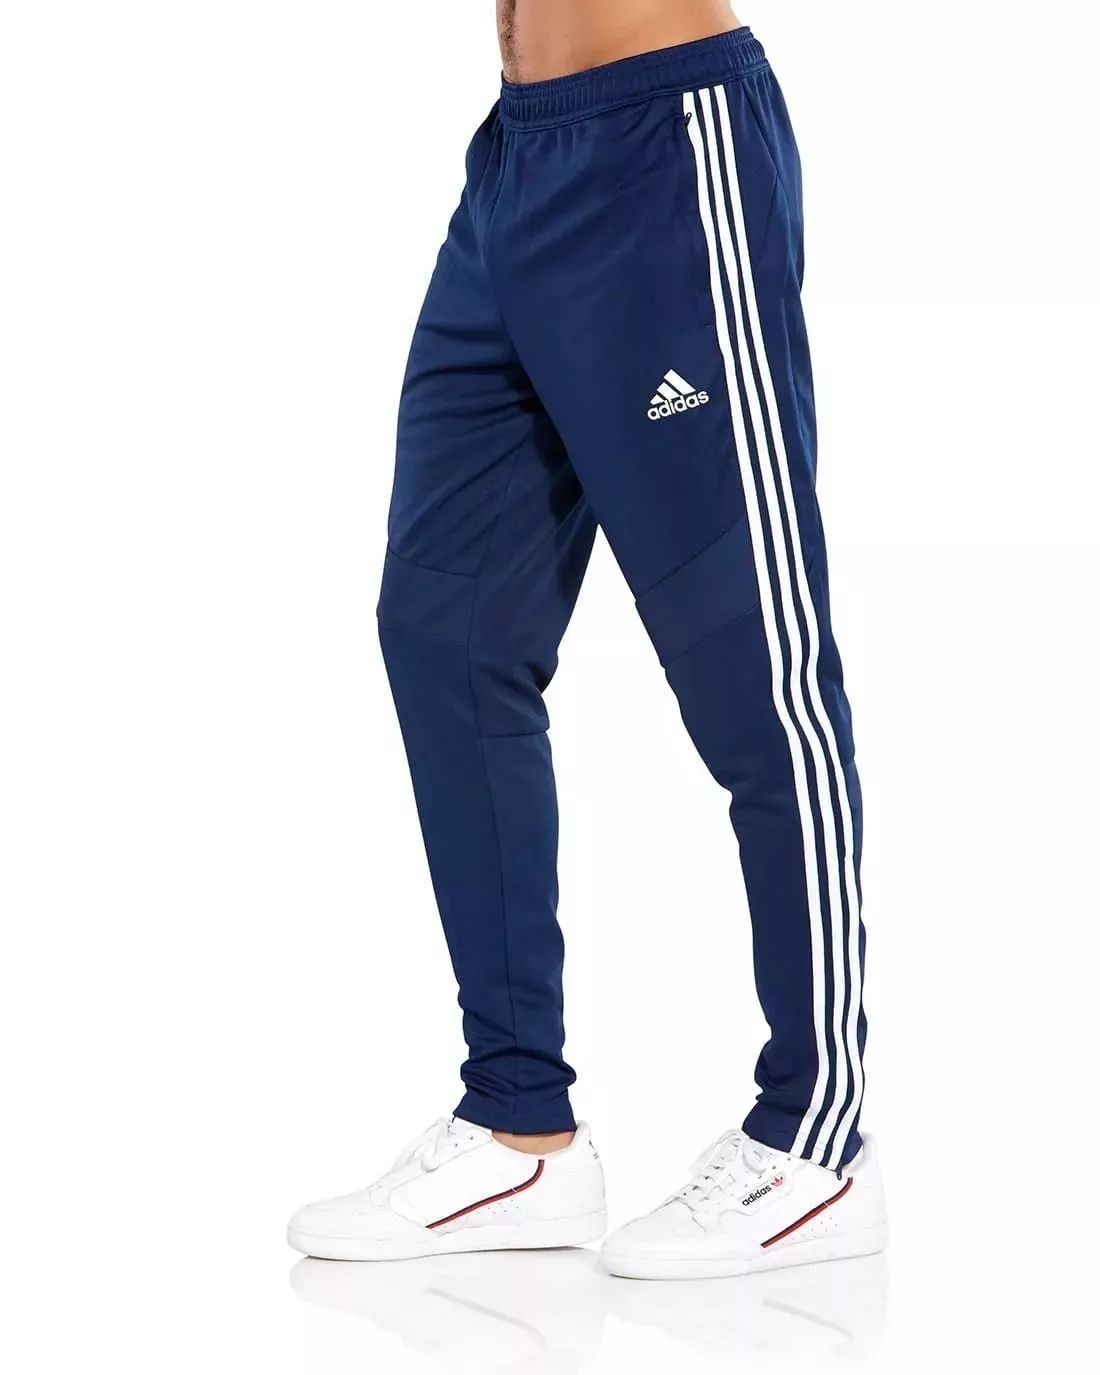 Adidas Climacool НОВІ ОРИГІНАЛЬНІ  спортивні штани